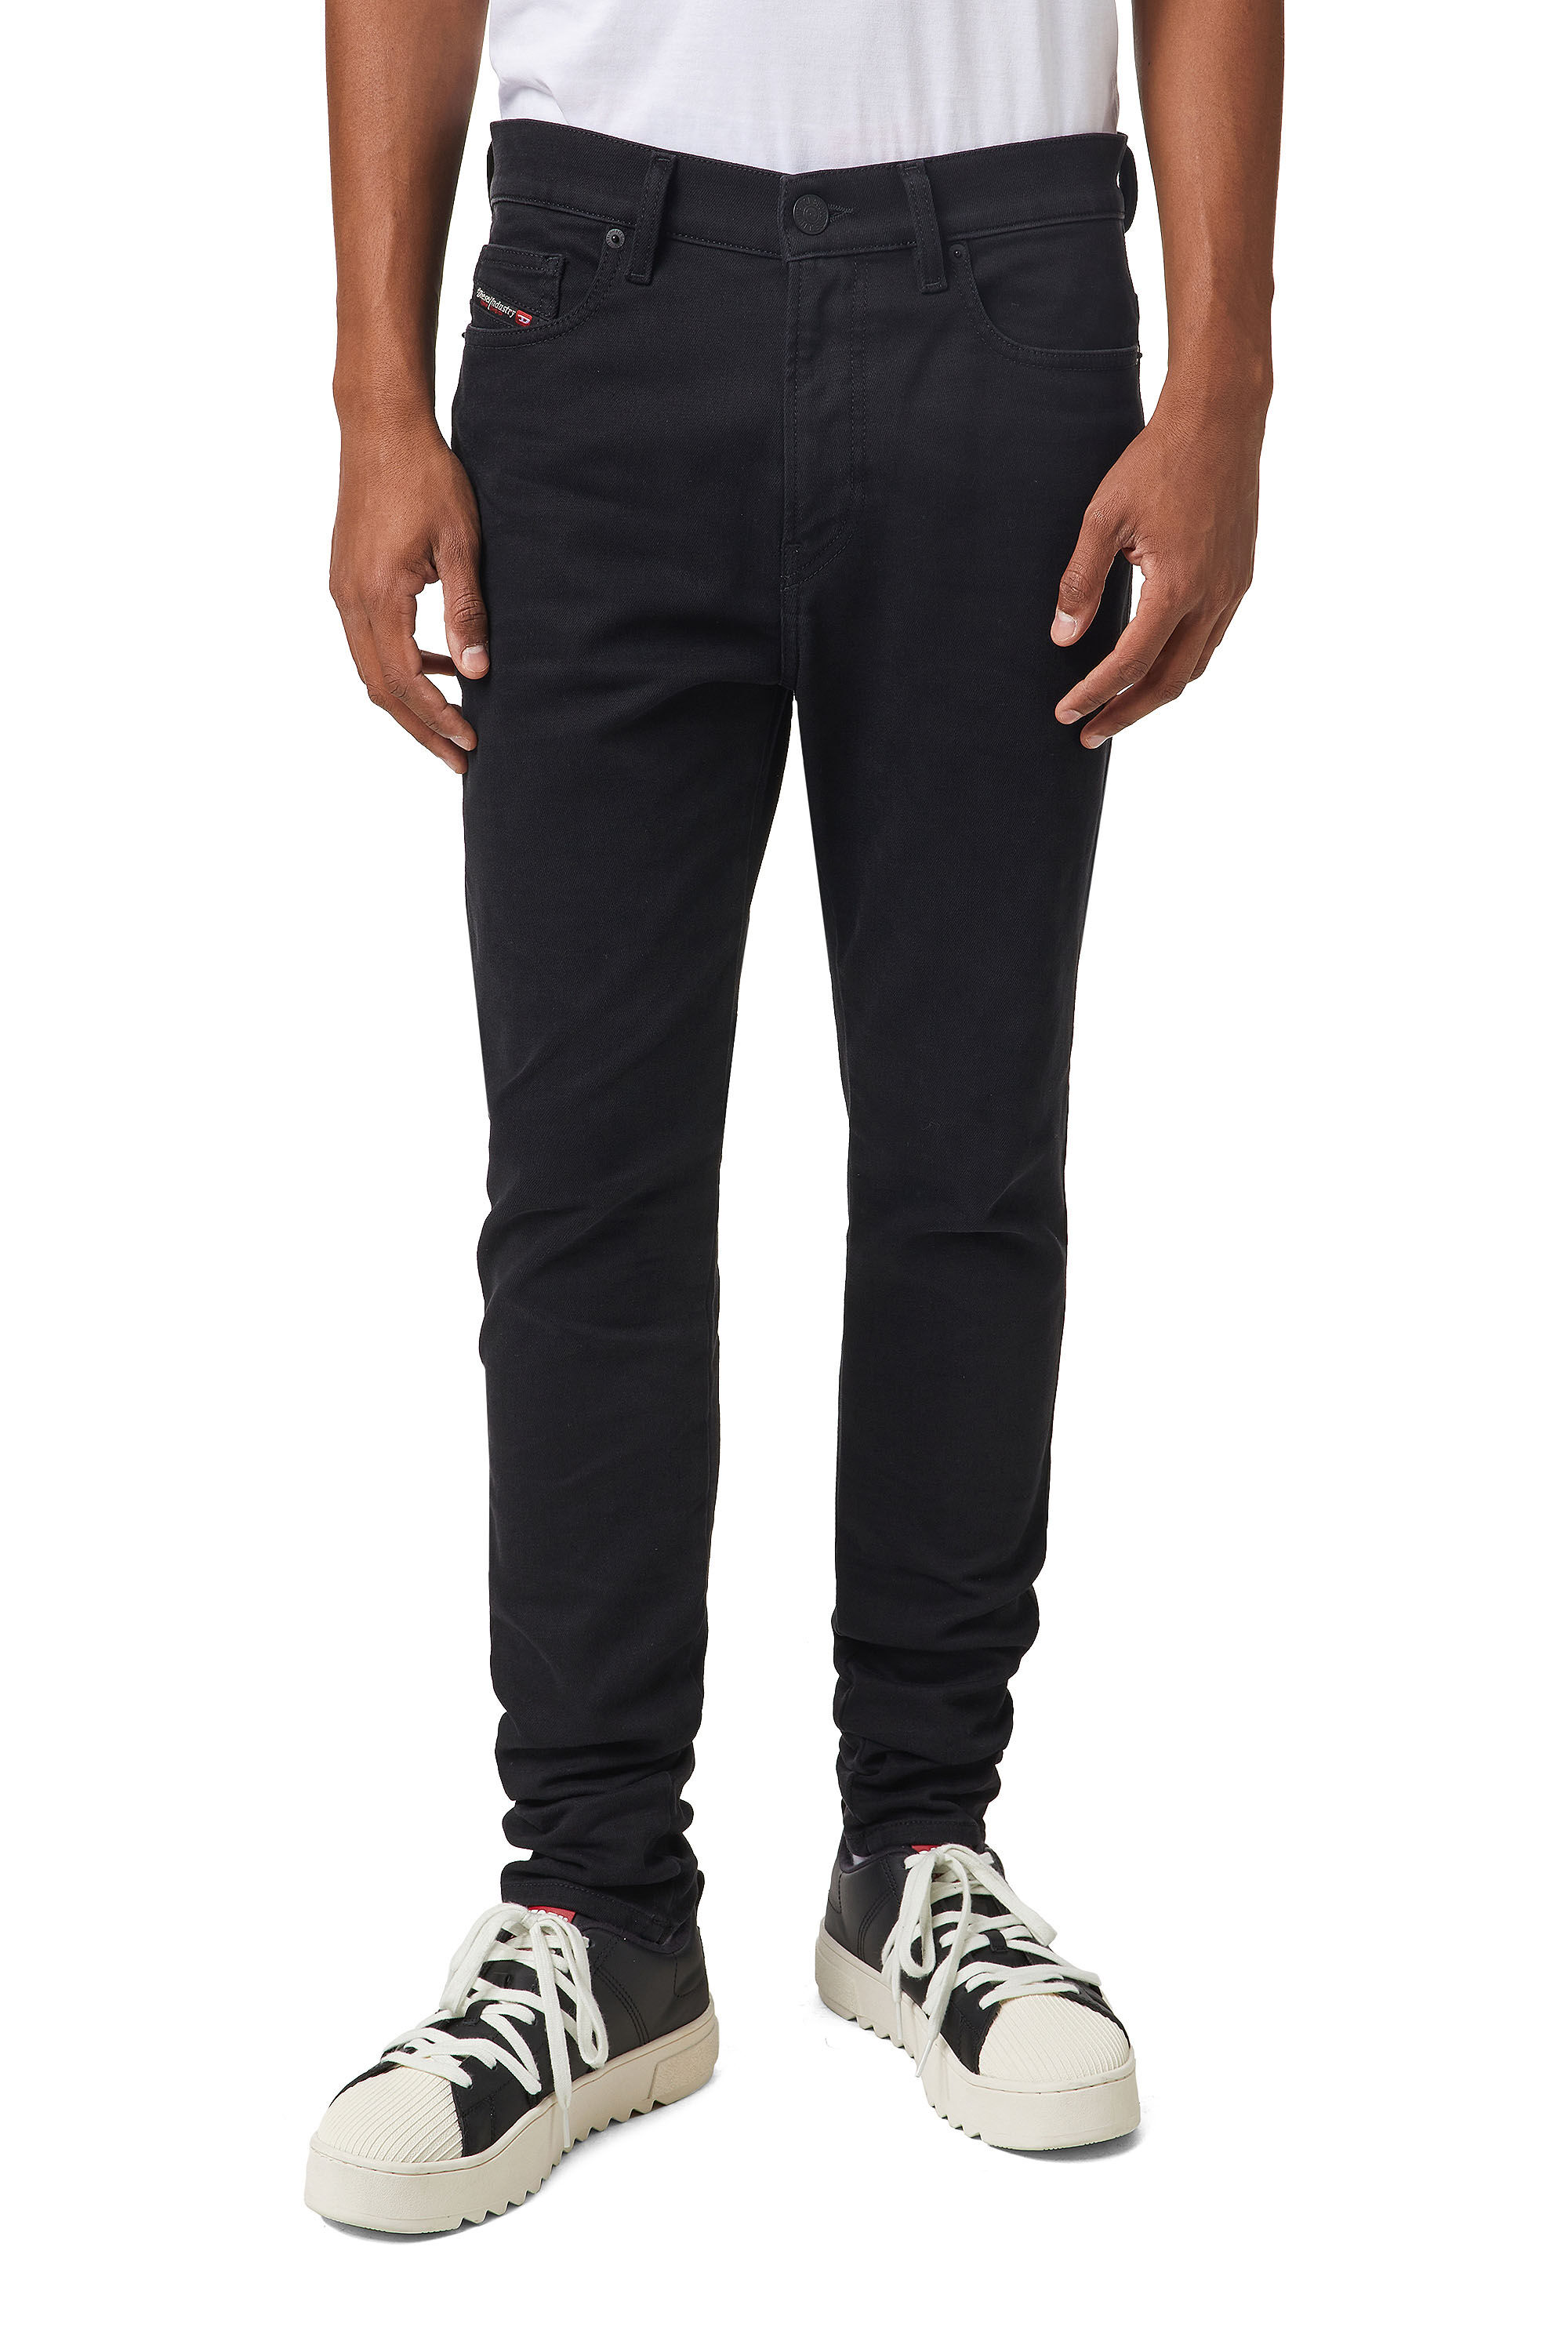 Diesel - D-Amny JoggJeans® Z9A29 Skinny, Black/Dark grey - Image 3